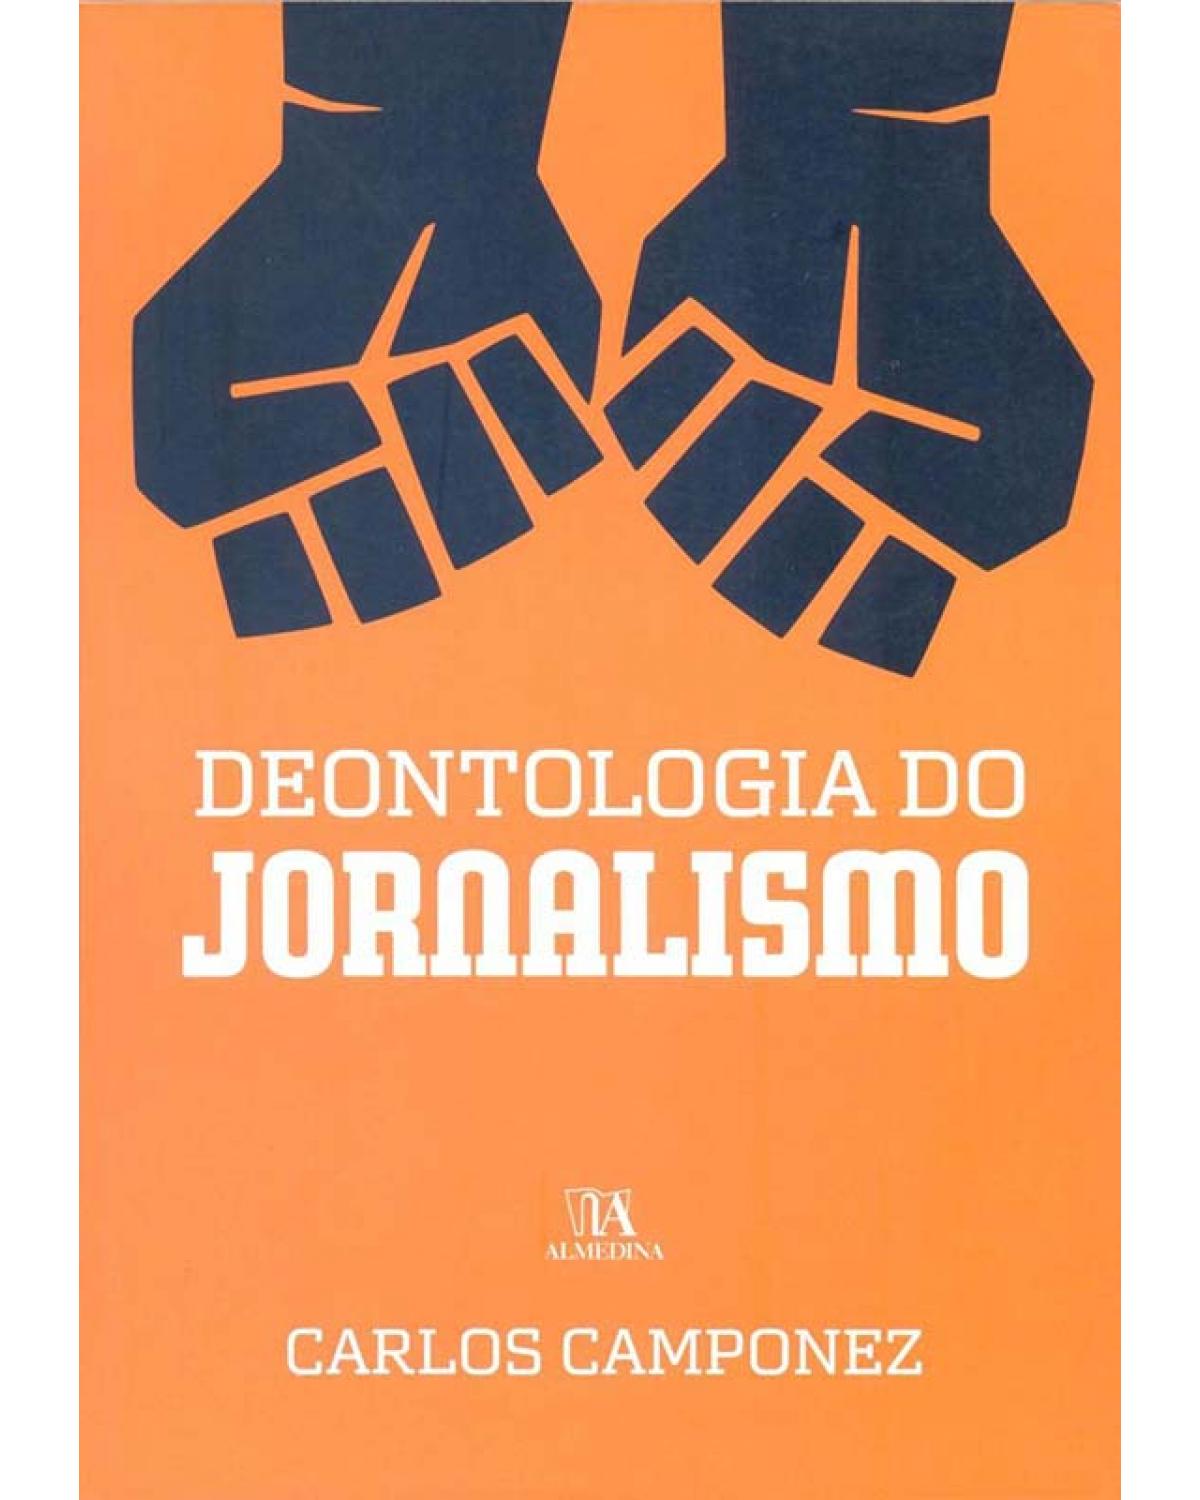 Deontologia do jornalismo - 1ª Edição | 2011